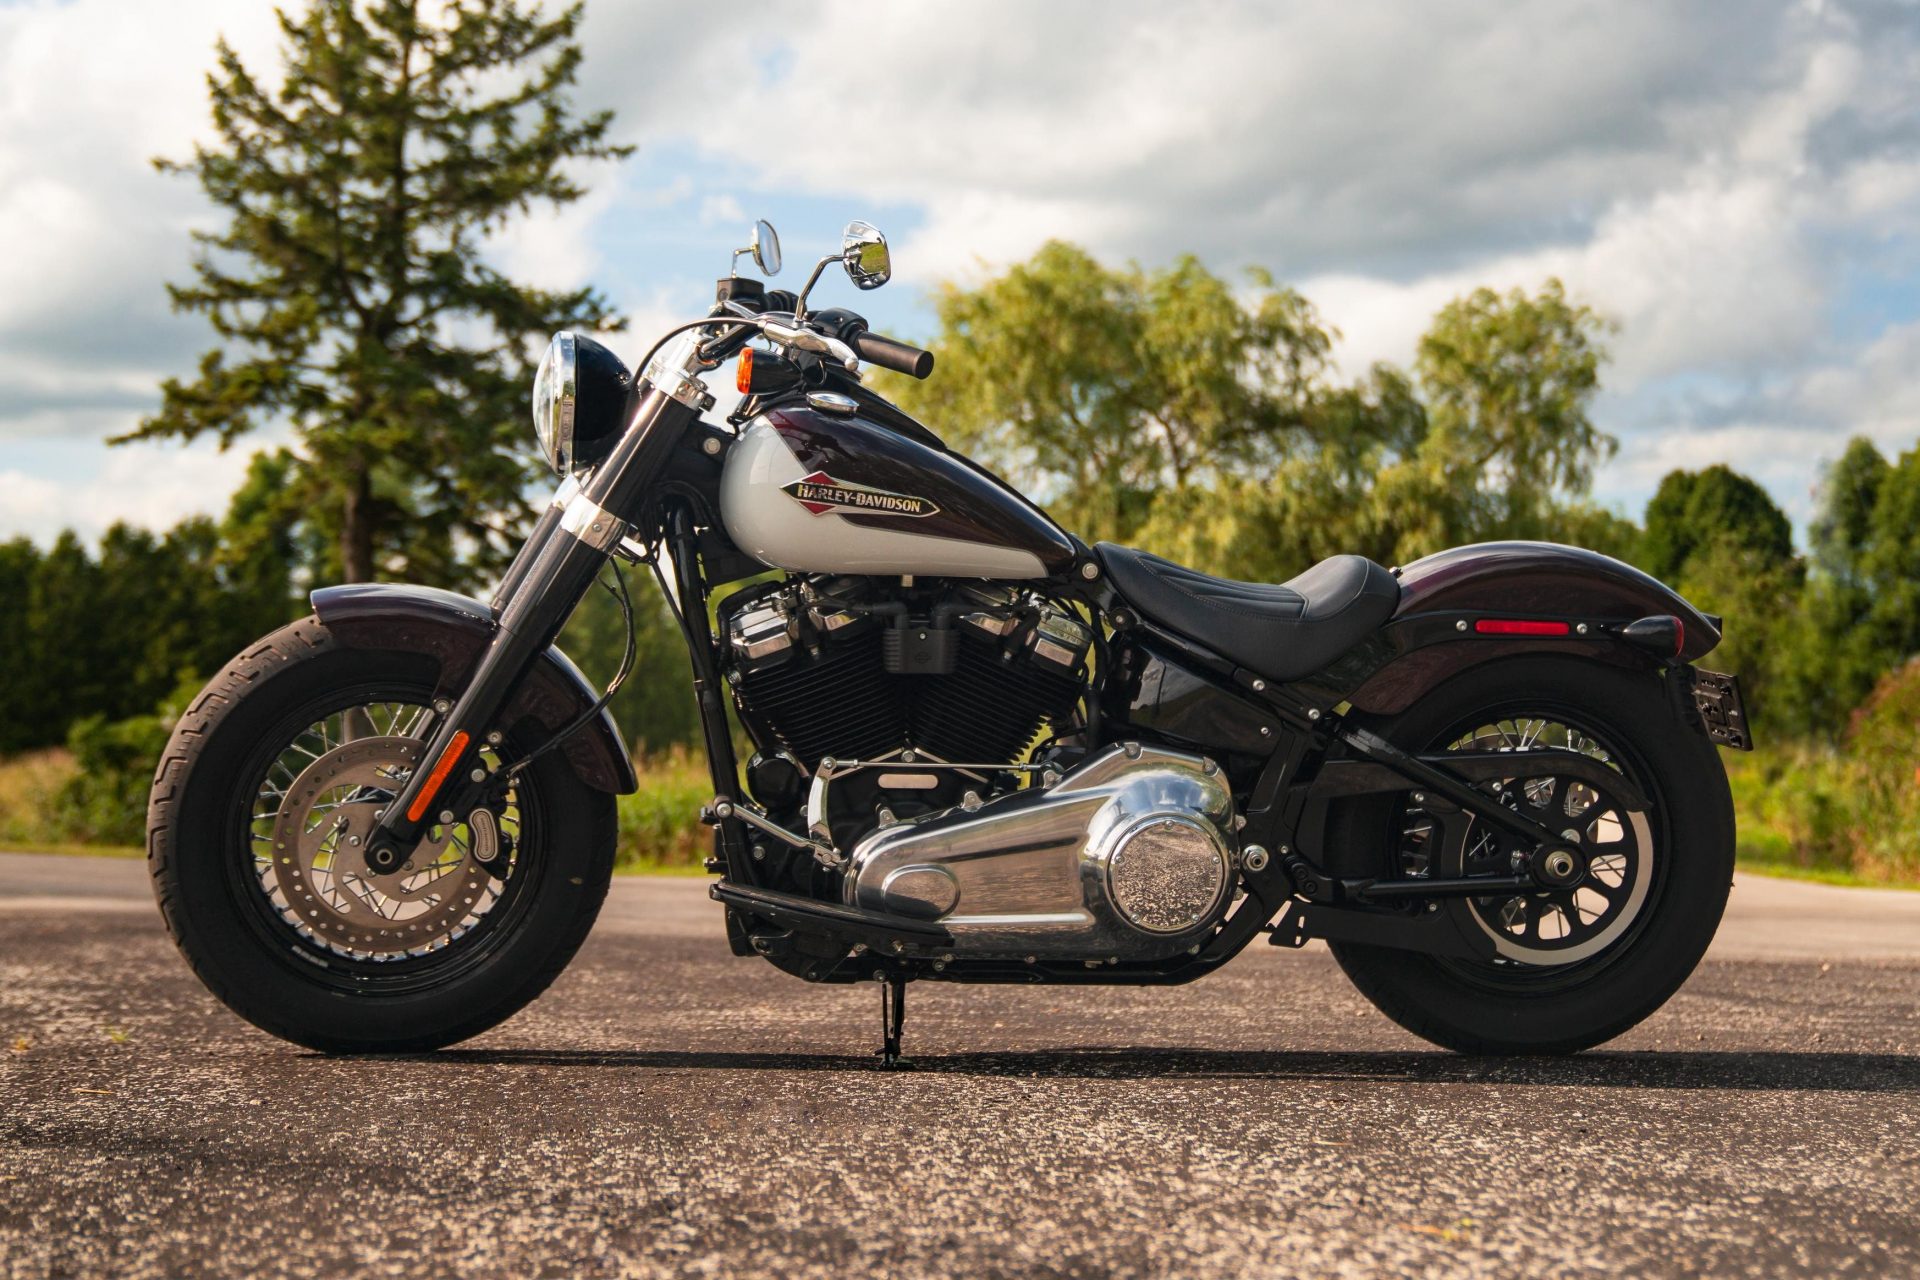 Harley Davidson Softail Slim Flsl 2019 Photos Data At Thunderbike